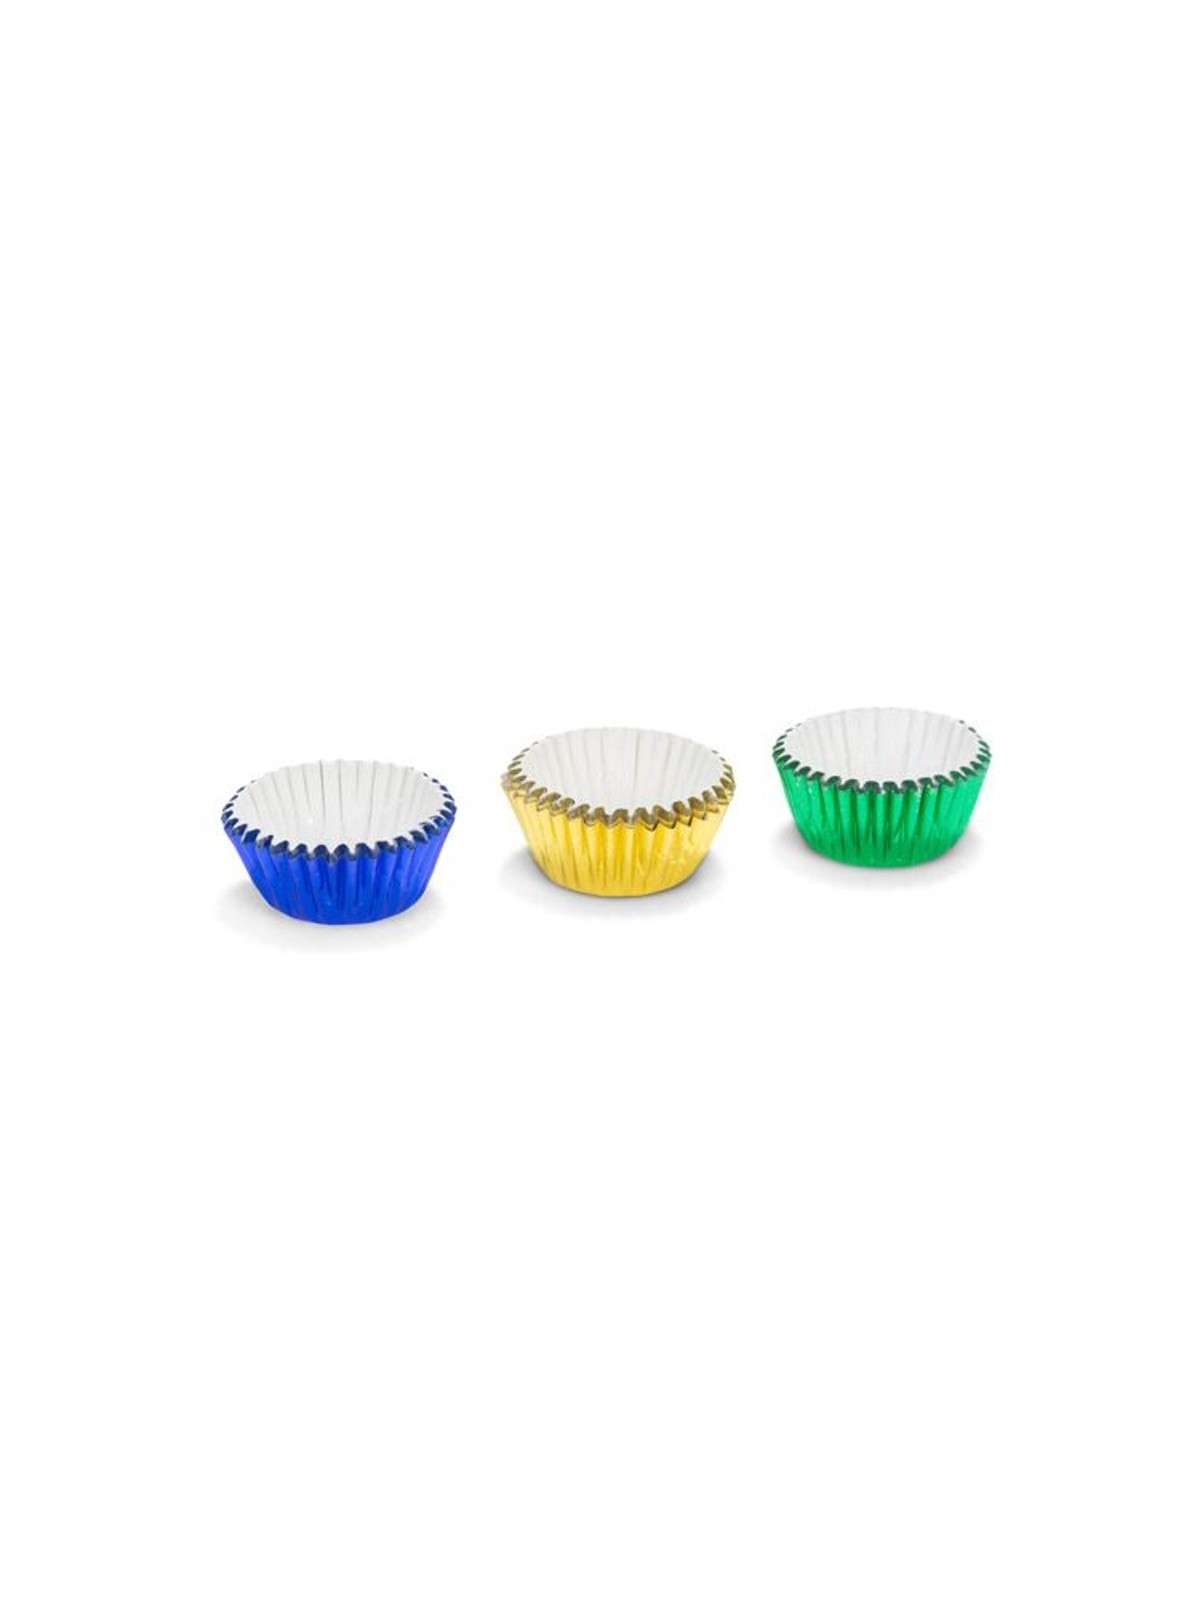 Patisse cukrářské MINI  košíčky 2,7 x 1,7cm - zelené / žluté / modré - 75ks